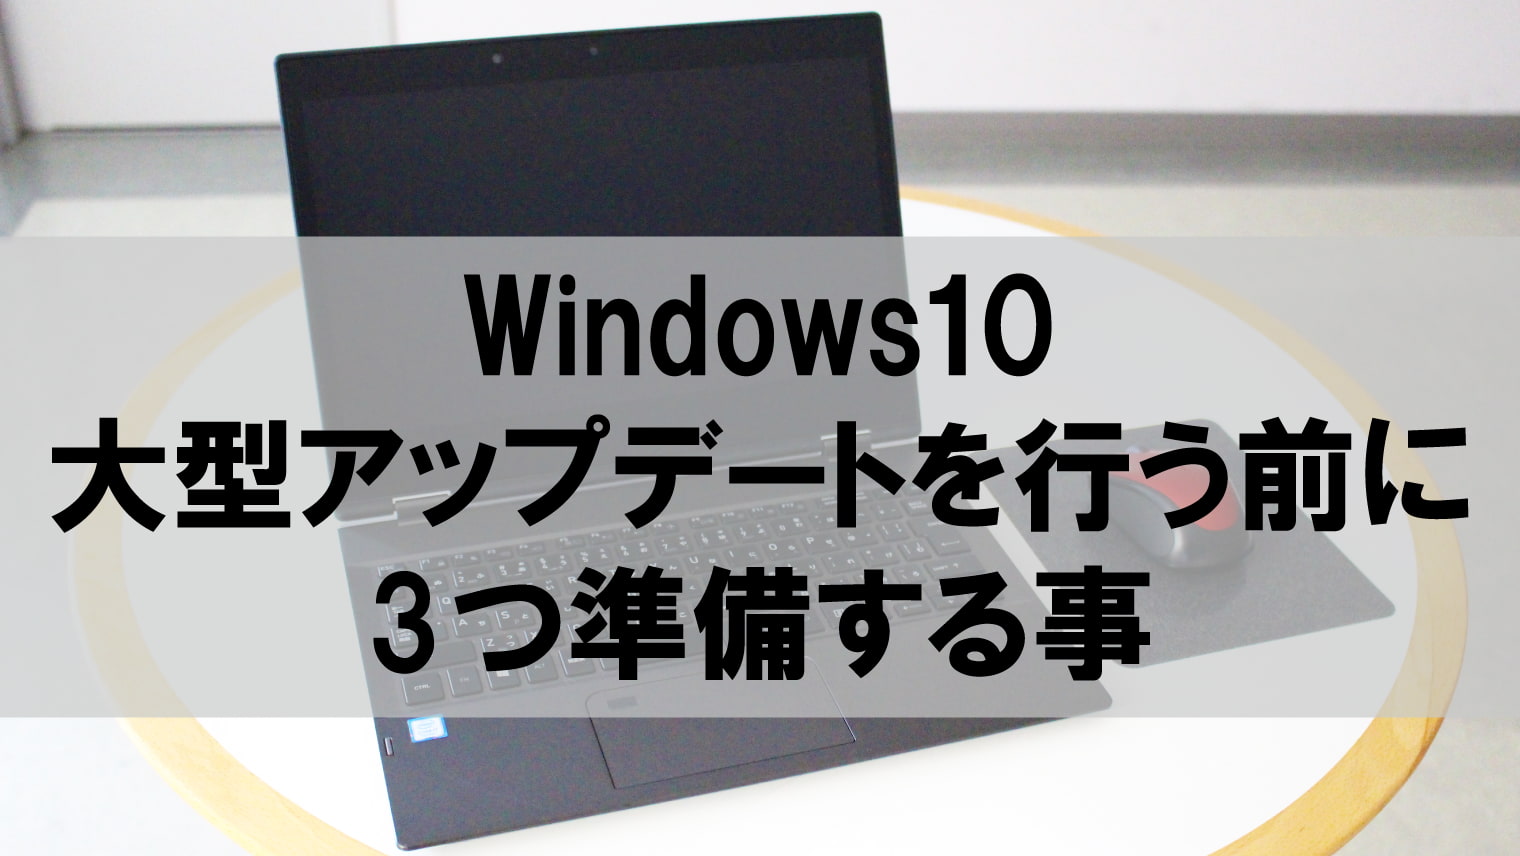 Windows10の最新バージョンへアップグレードする方法【誰でもわかる】